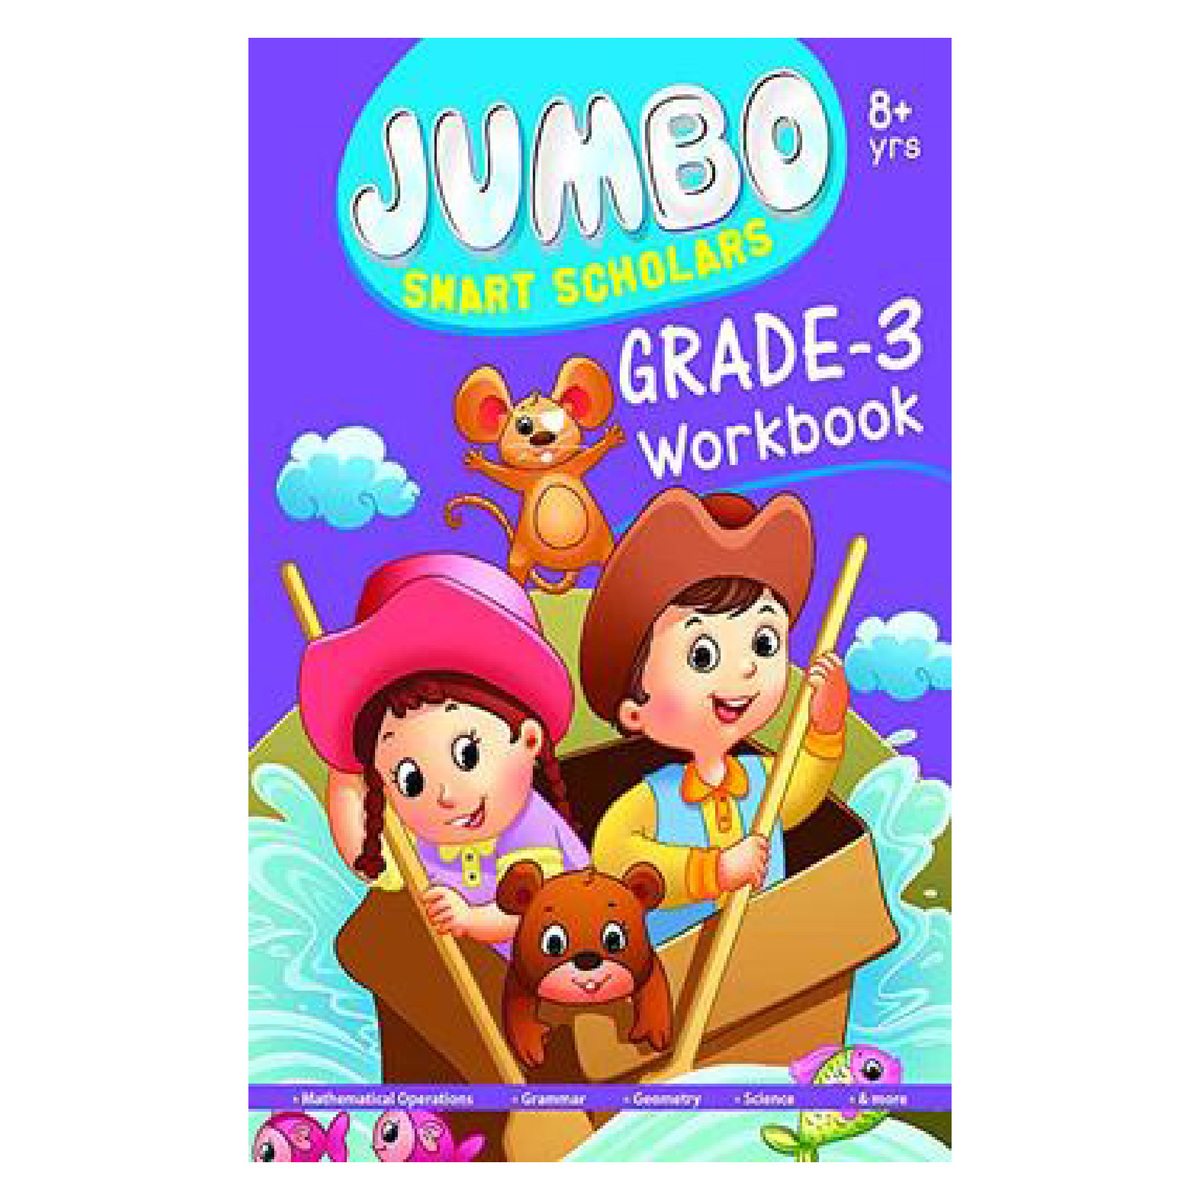 كتاب طلاب جامبو الأذكياء للصف الثالث - كتاب مدرسي ، غلاف عادي